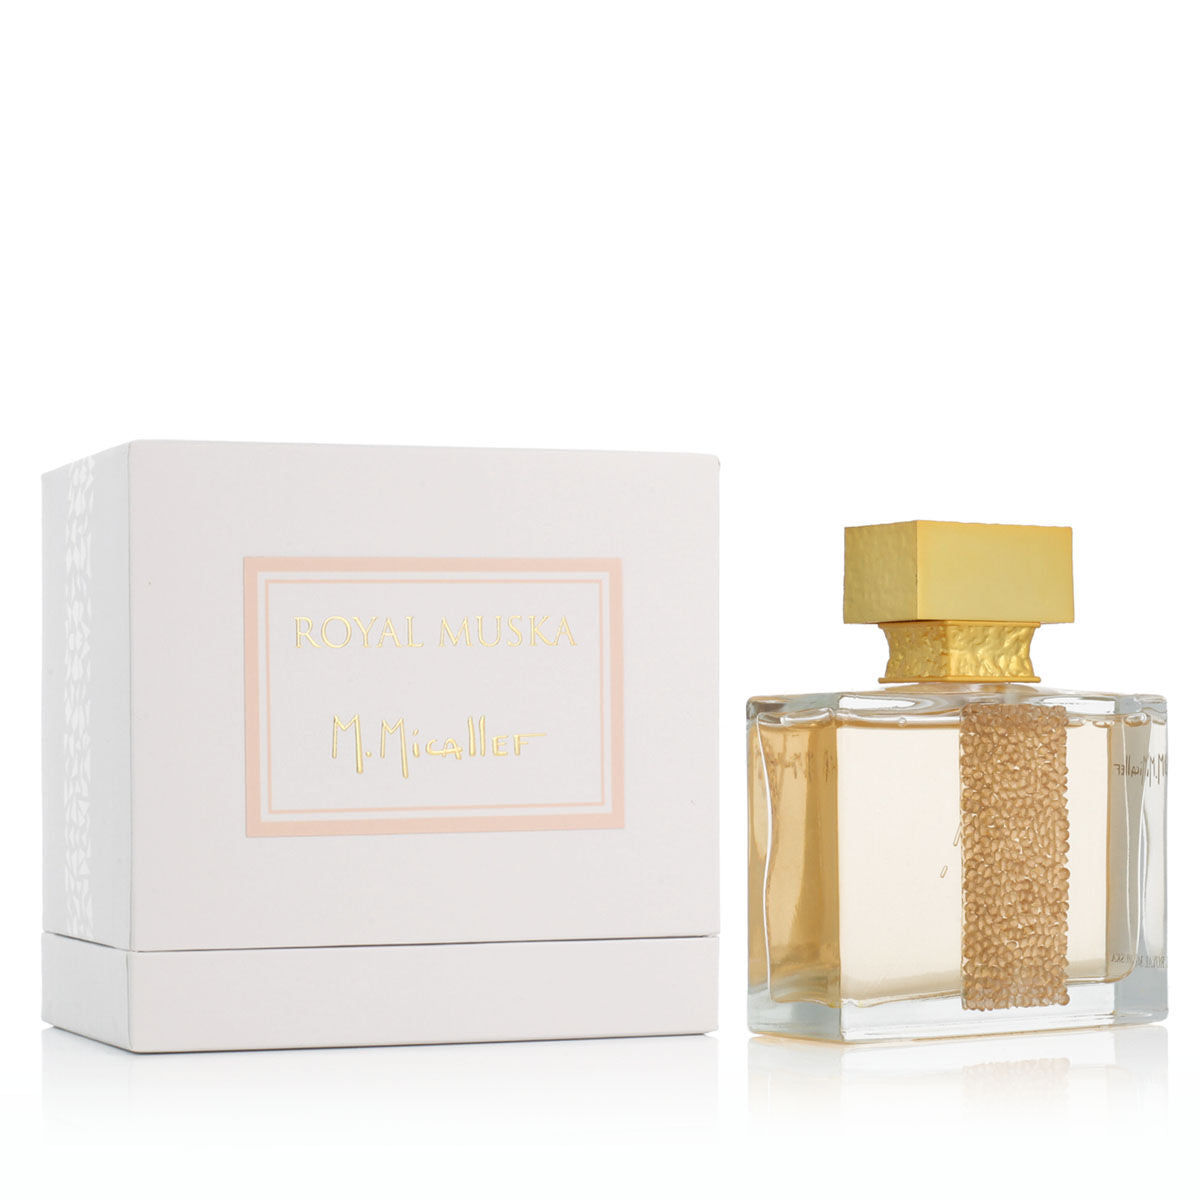 Women's Perfume M.Micallef EDP EDP 100 ml Royal Muska